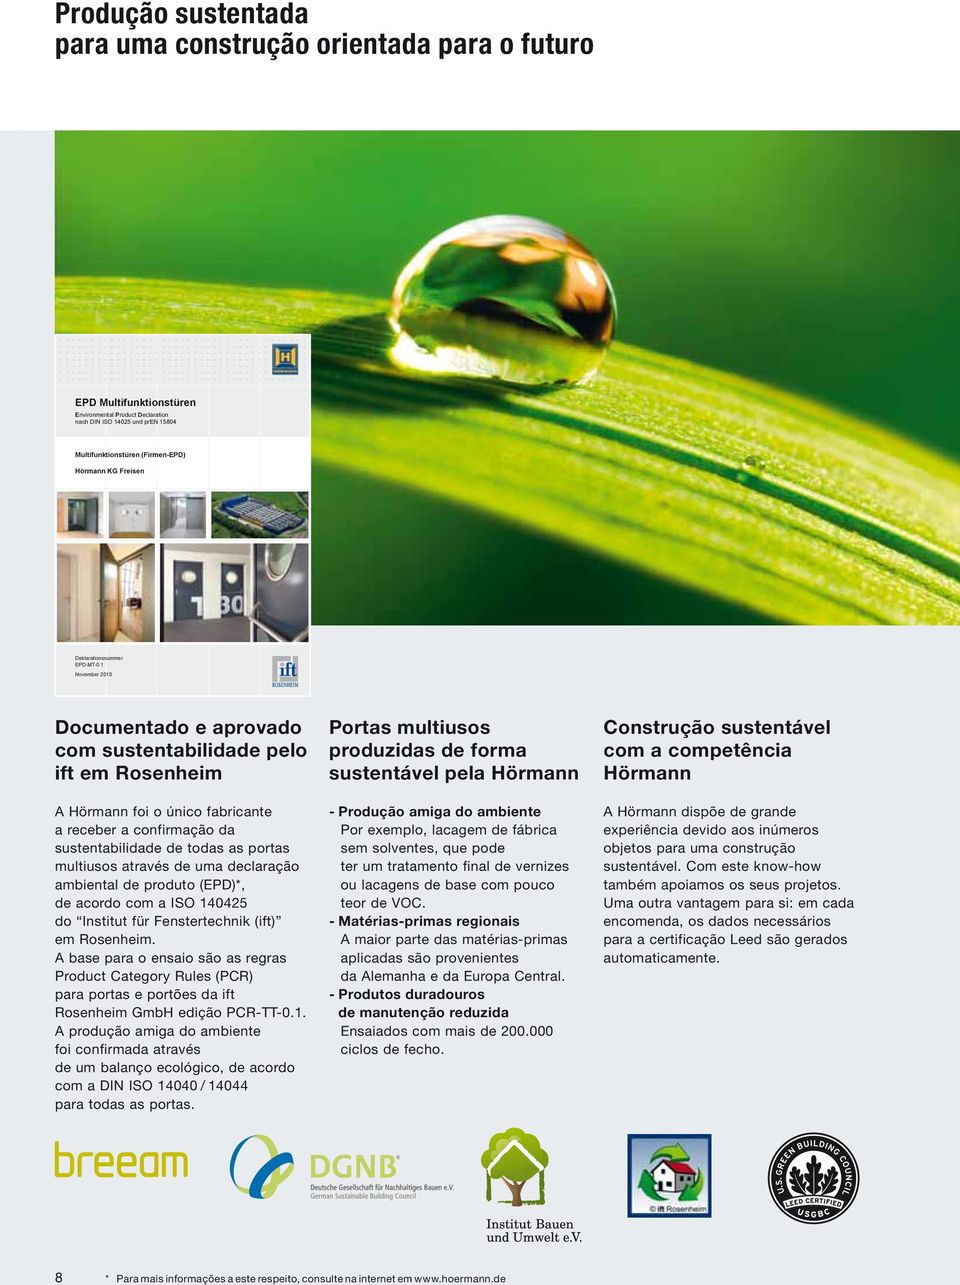 1 November 2010 Documentado e aprovado com sustentabilidade pelo ift em Rosenheim Portas multiusos produzidas de forma sustentável pela Hörmann Construção sustentável com a competência Hörmann A